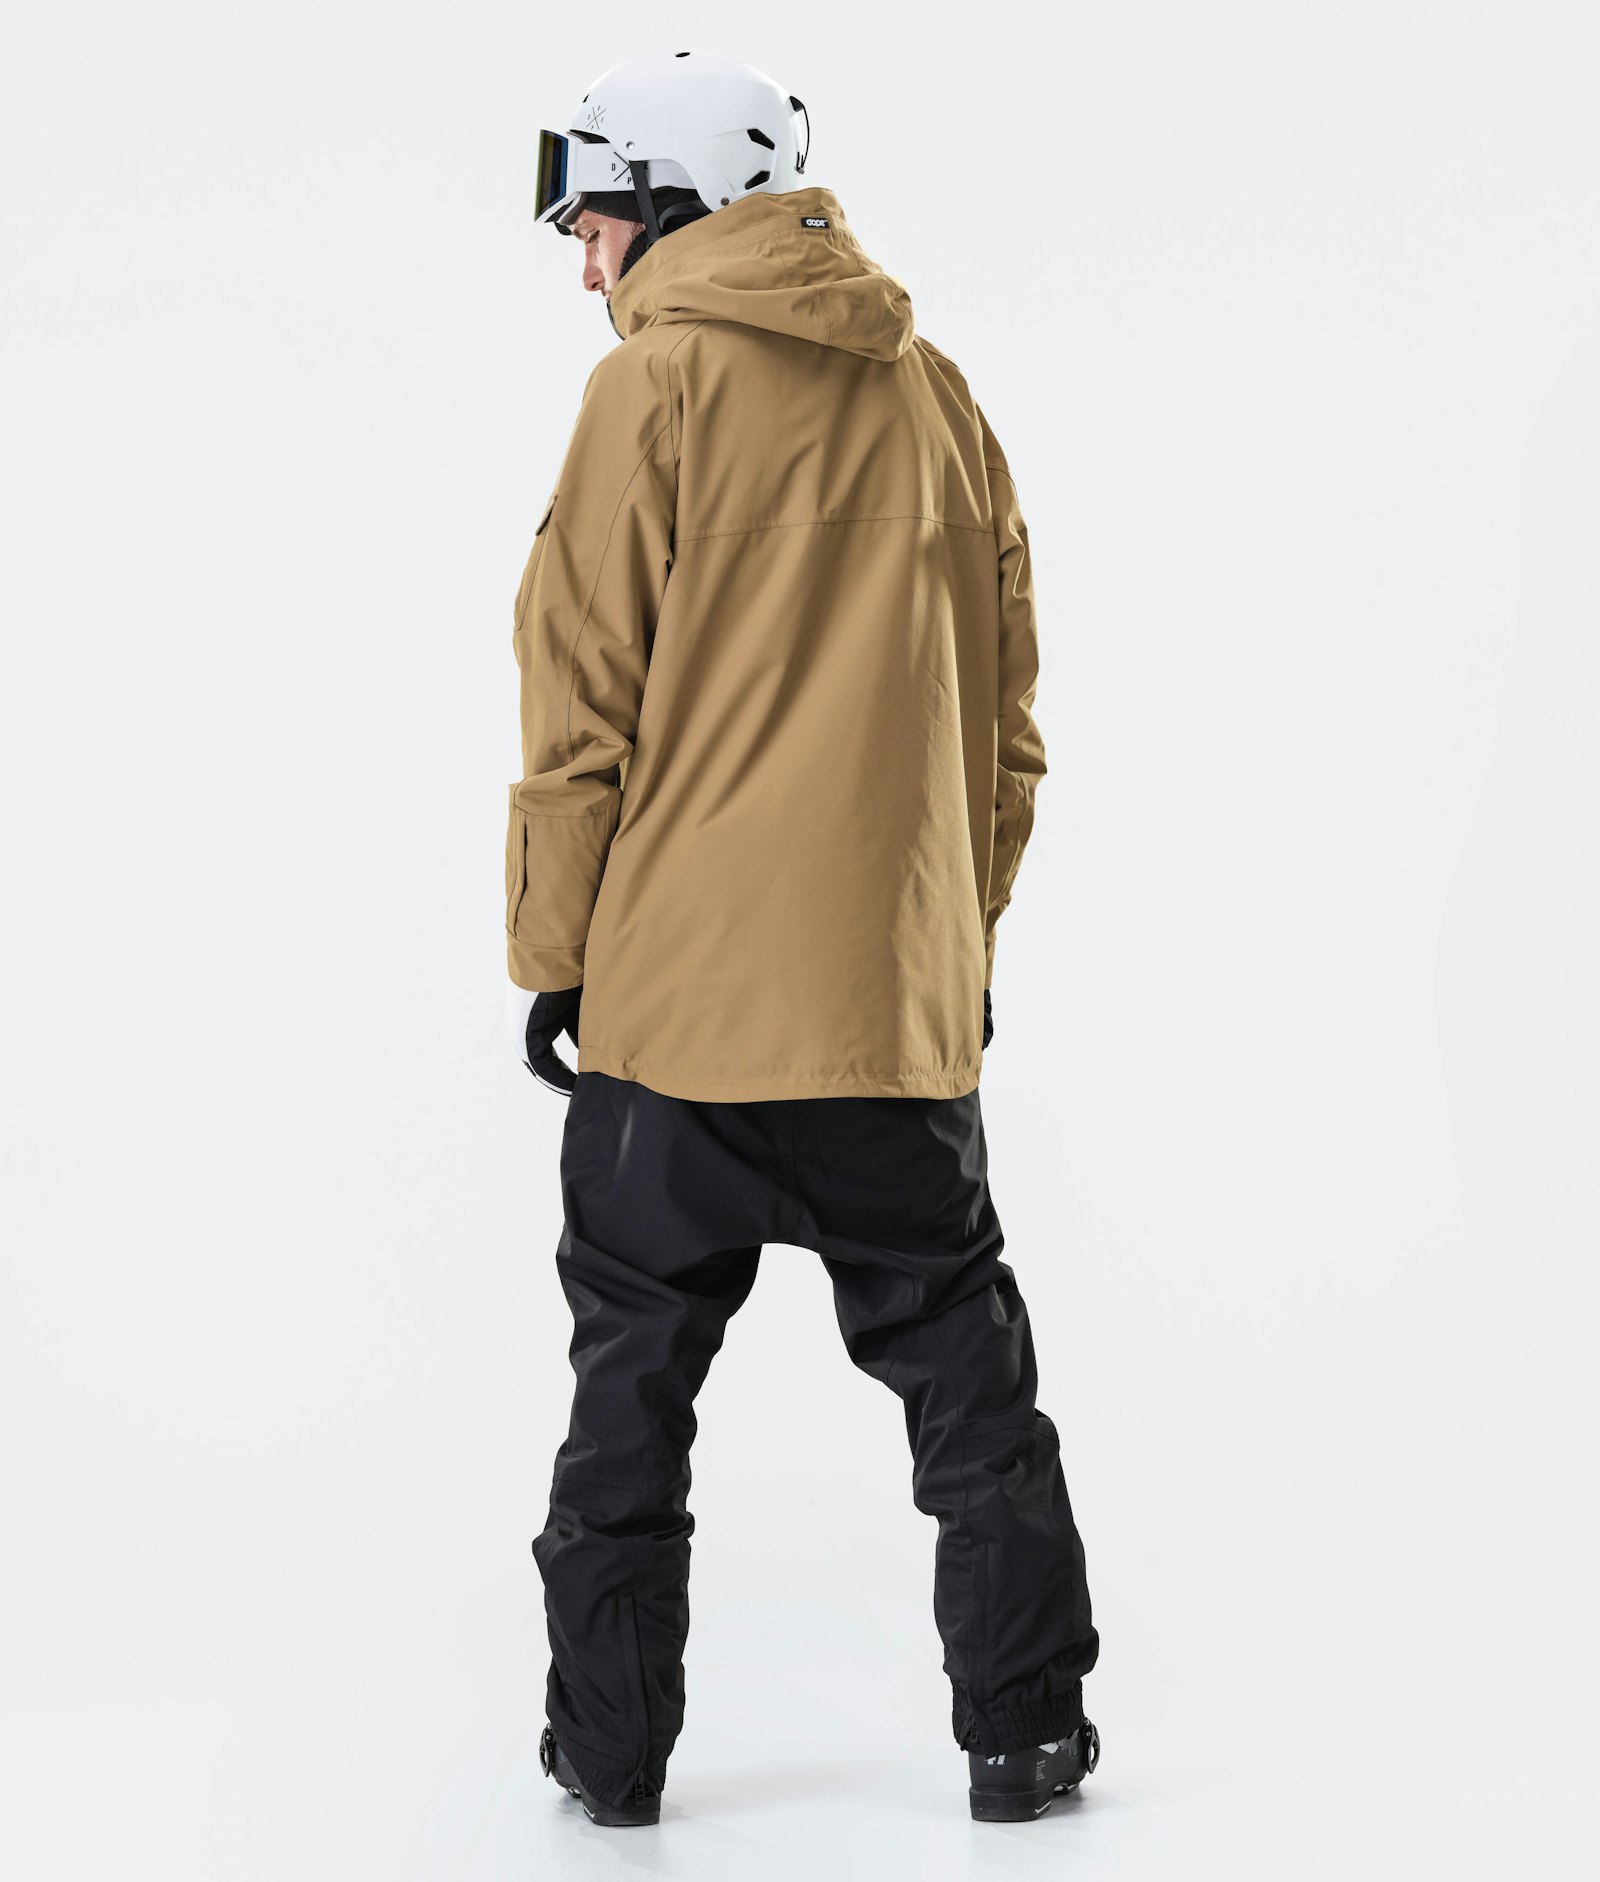 Akin 2020 スキージャケット メンズ Gold